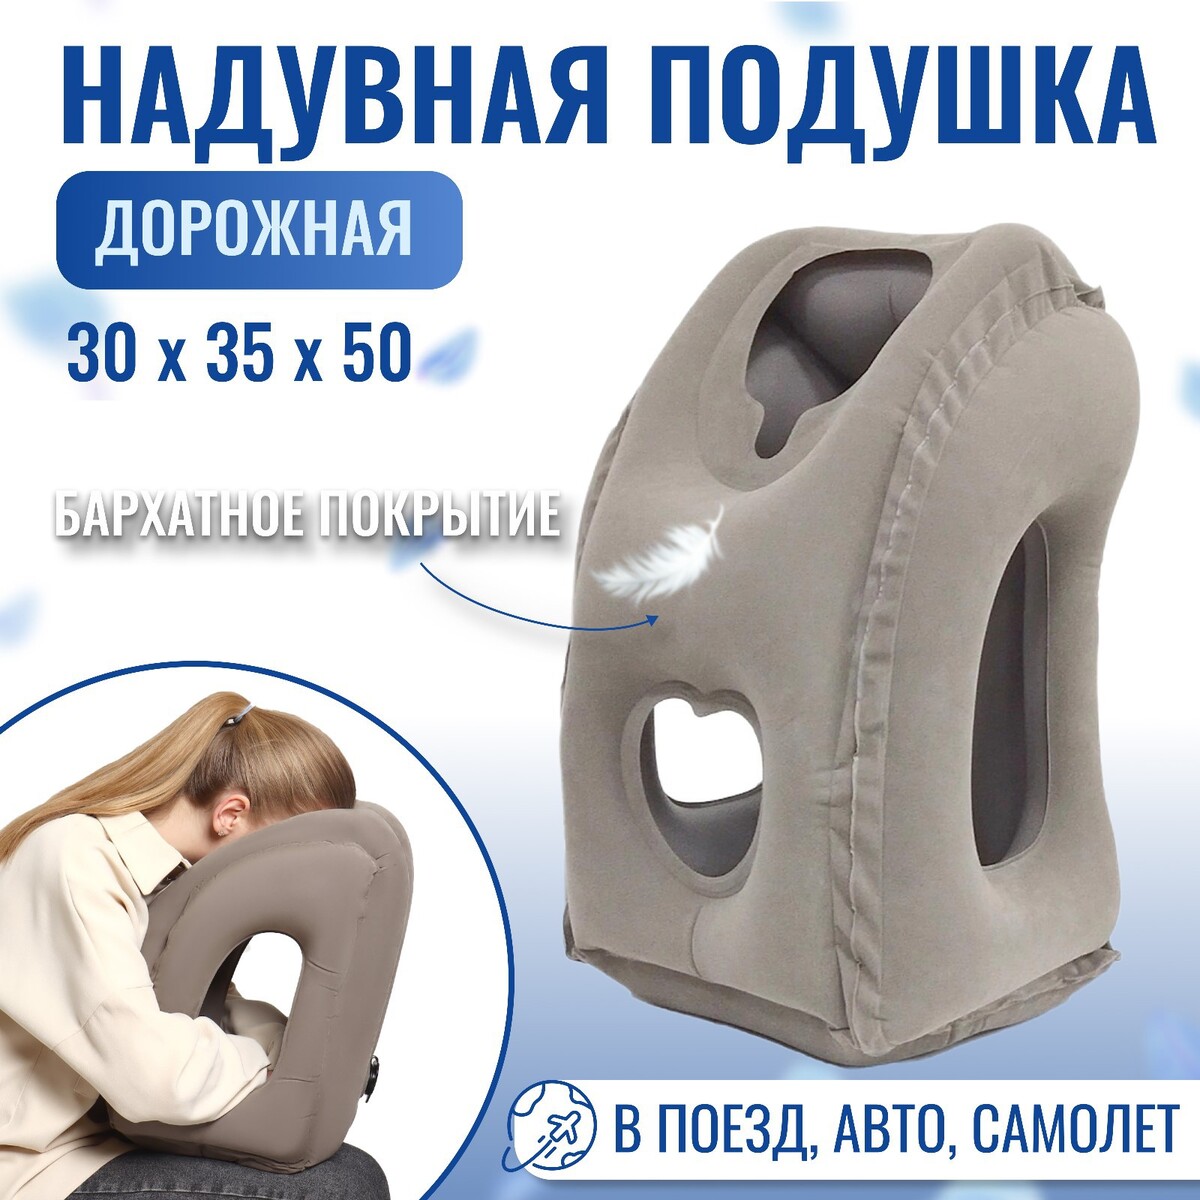 Подушка надувная, 50 × 35 × 30 см, в чехле, цвет серый подушка дорожная надувная 46 × 30 см синий